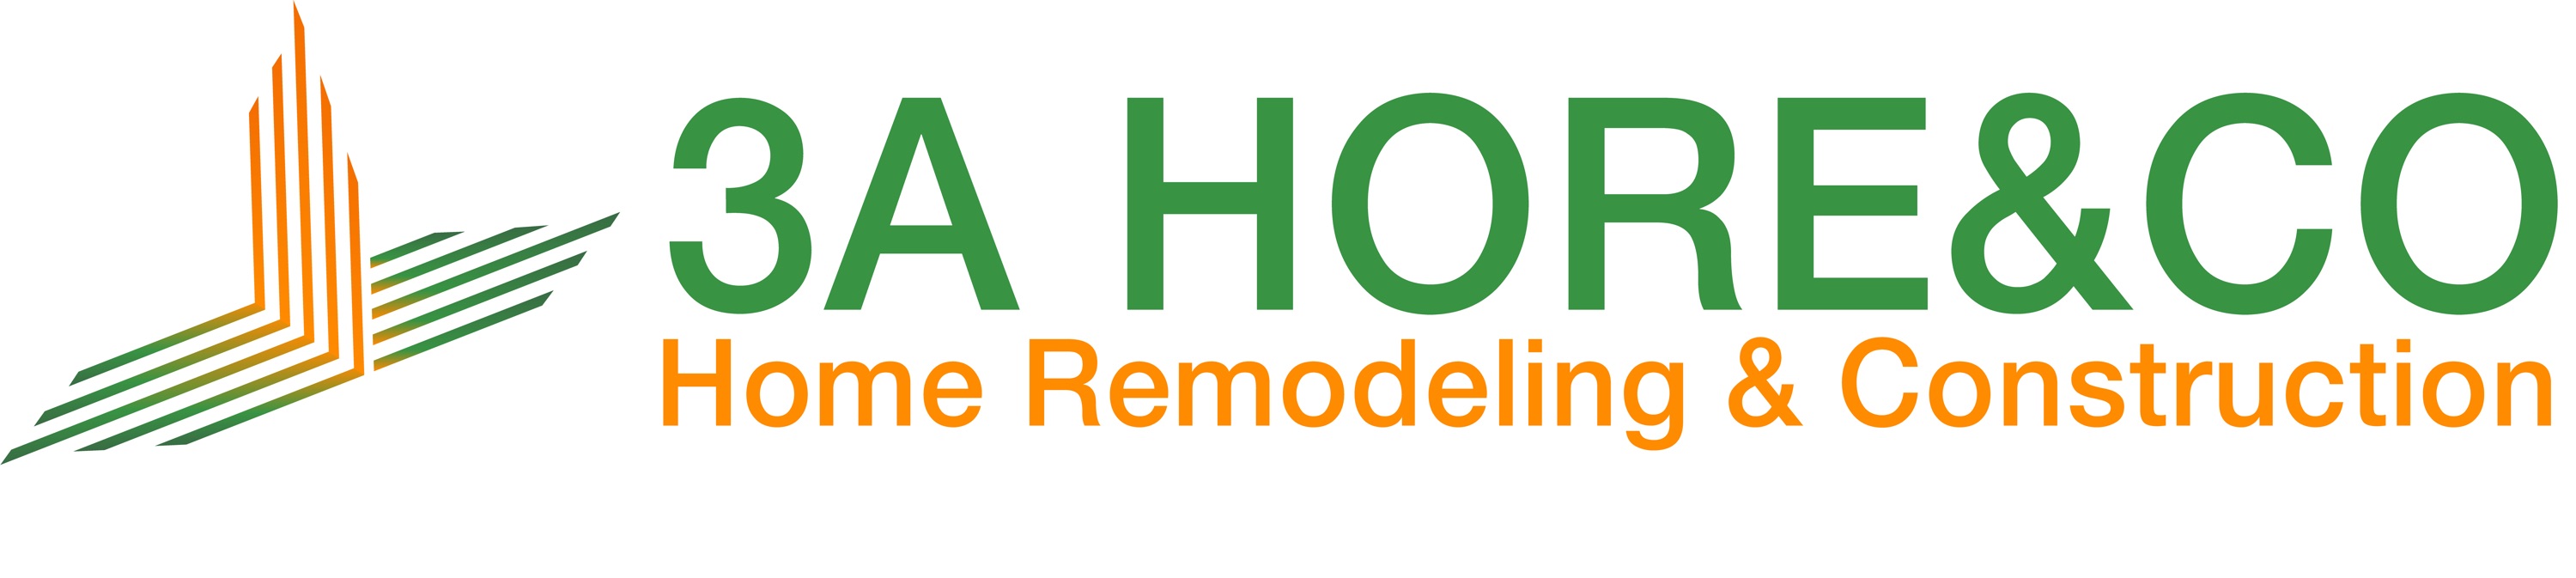 3A HOREYCO LLC Logo